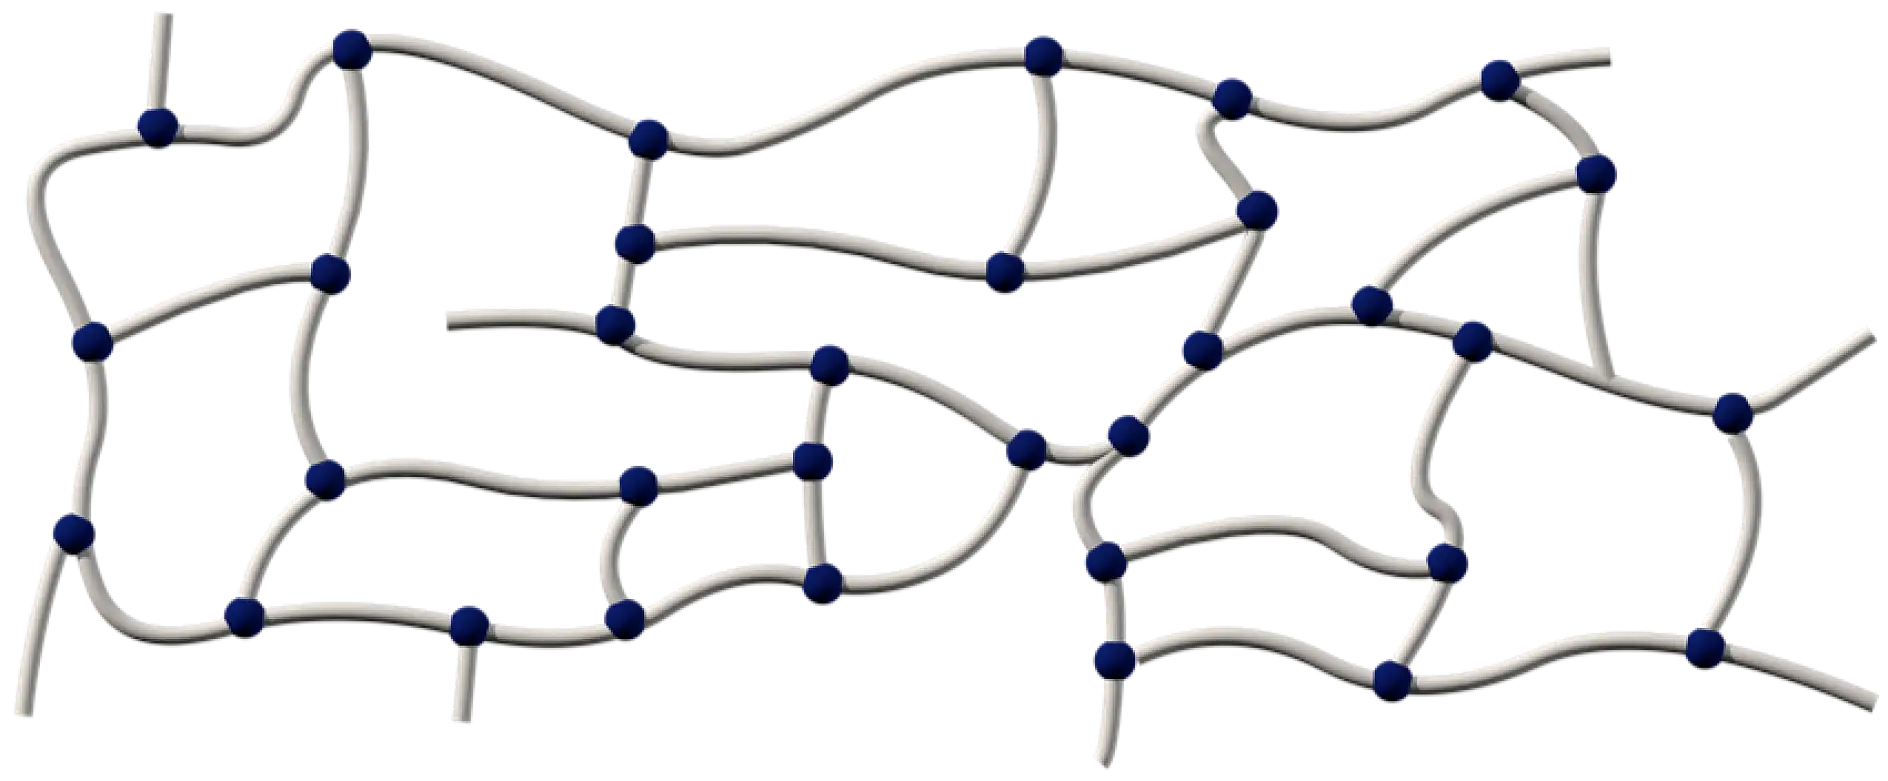 Akrylová lepidla se skládají z dlouhých polymerních řetězců zesíťovaných různými metodami: chemicky, UV zářením nebo tvrzením proudem elektronů